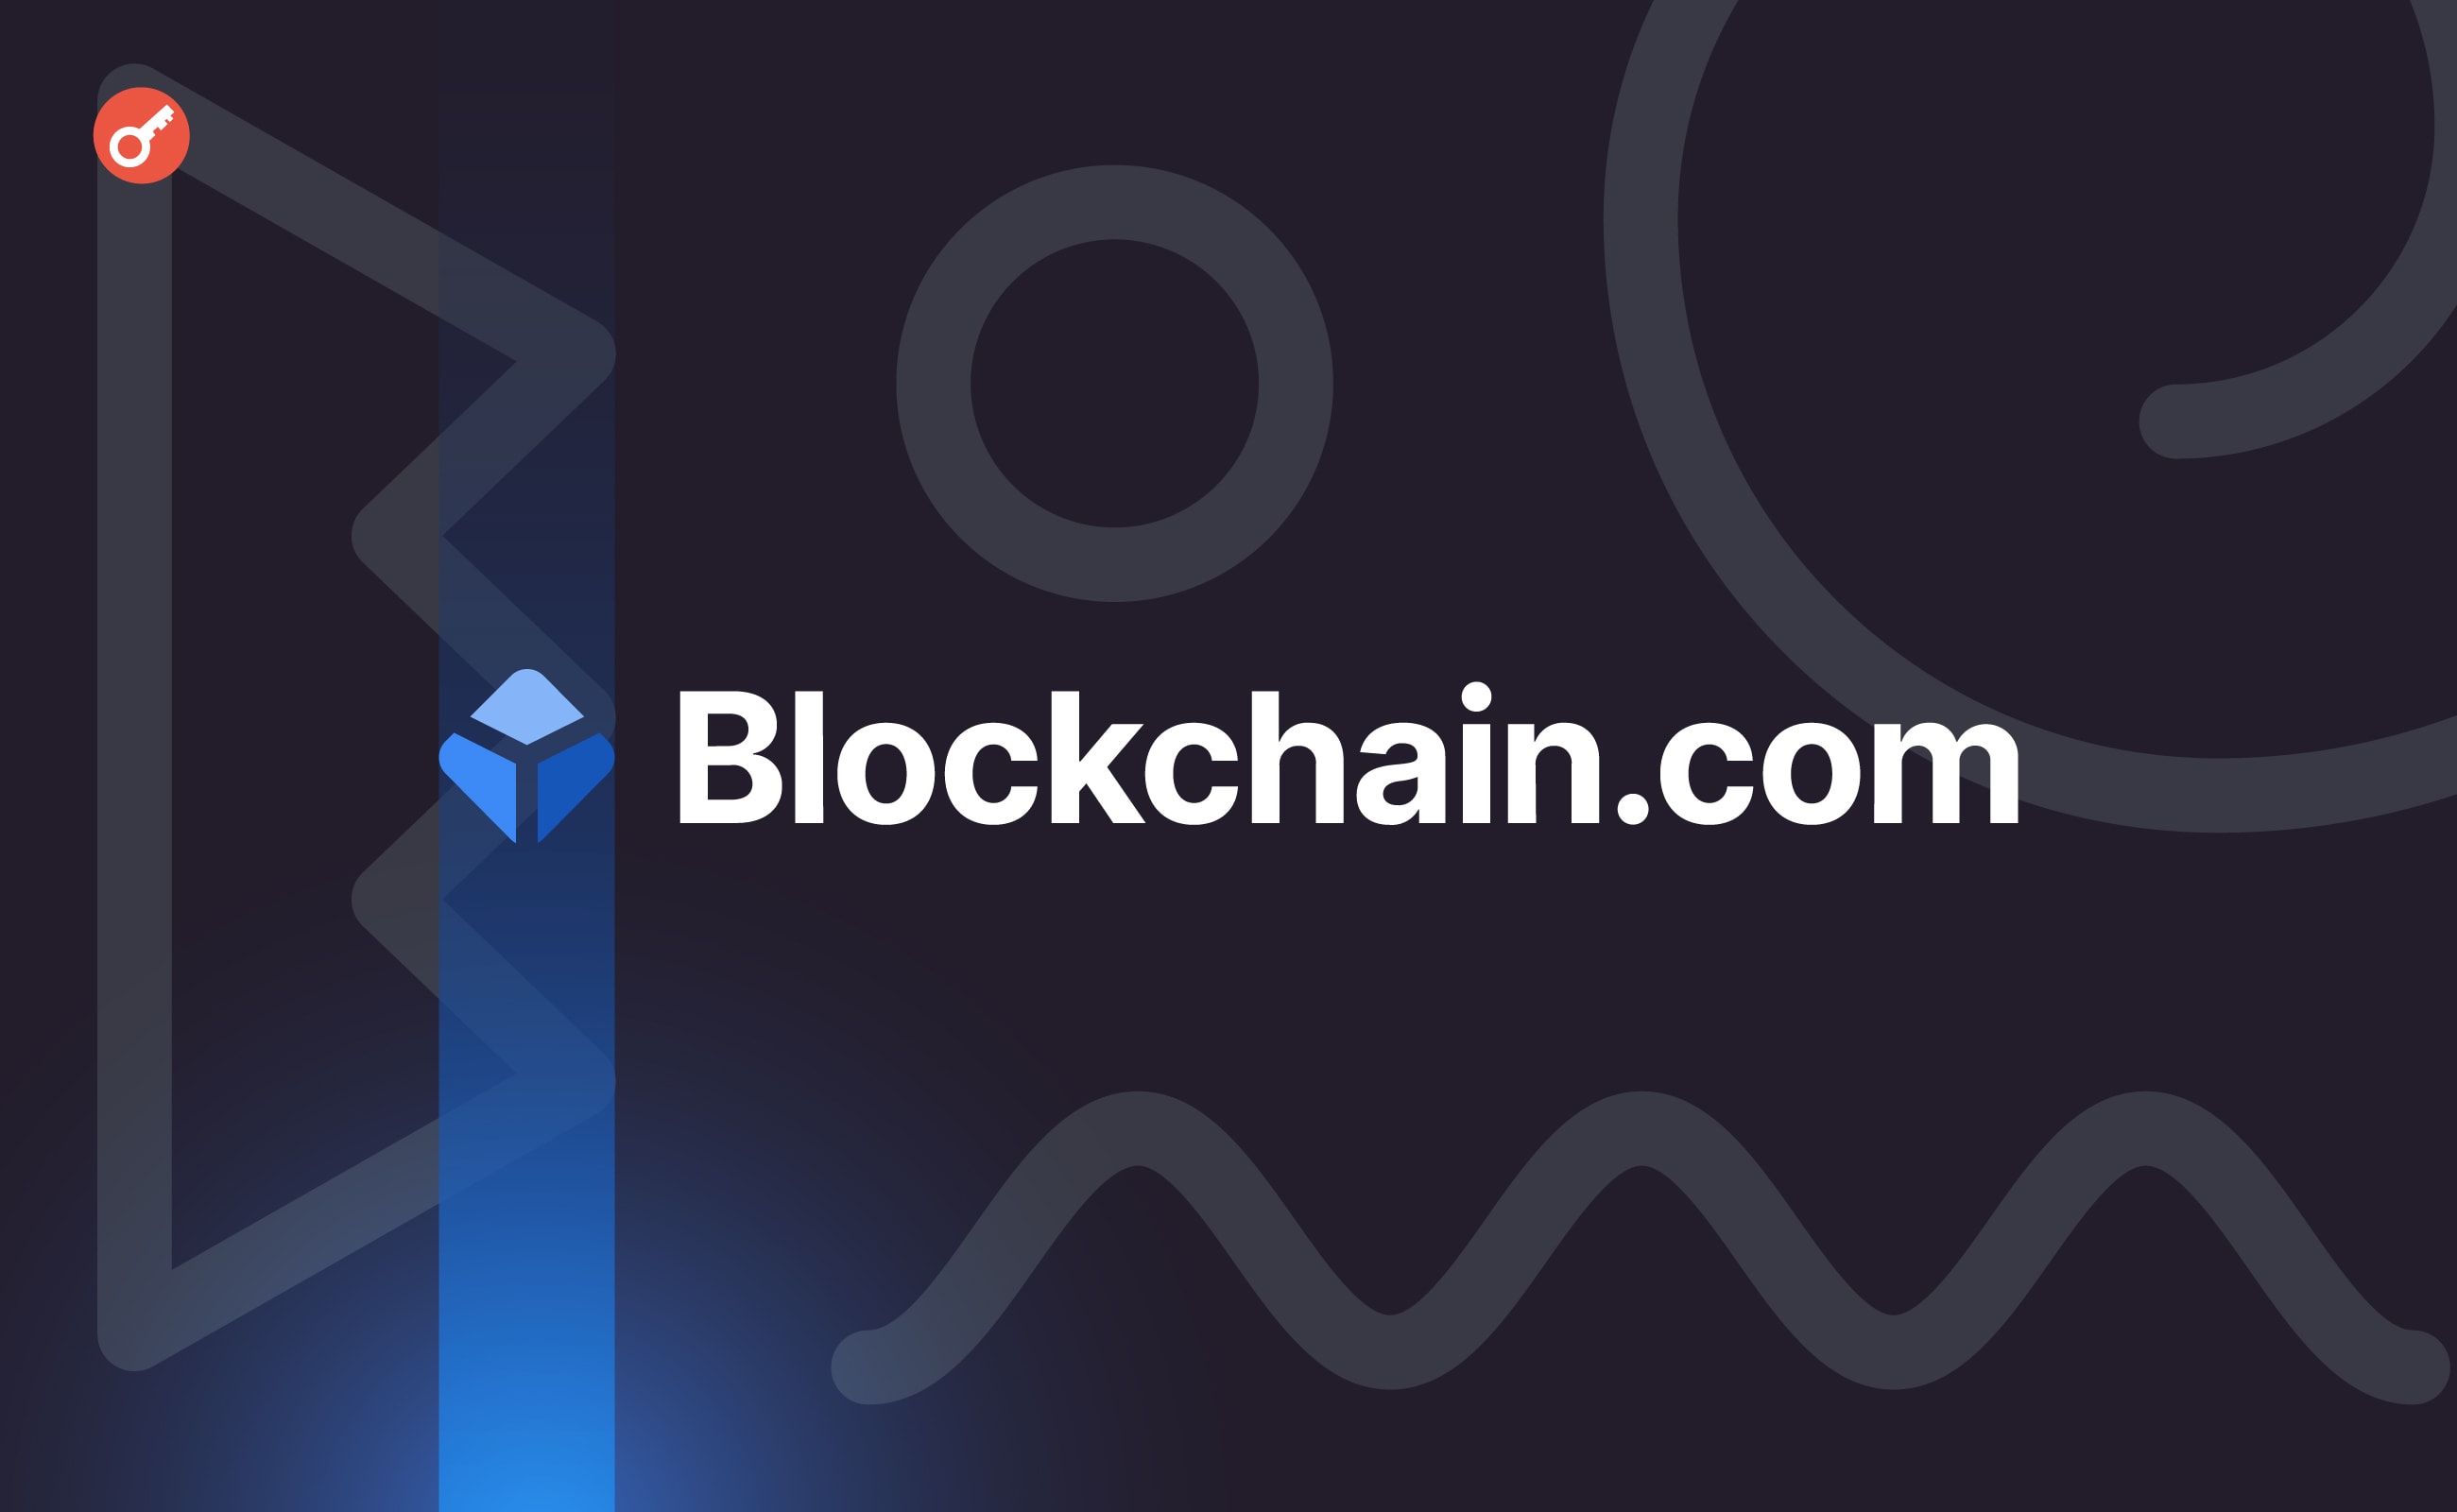 Blockchain.com залучила $110 млн під час раунду фінансування. Головний колаж новини.